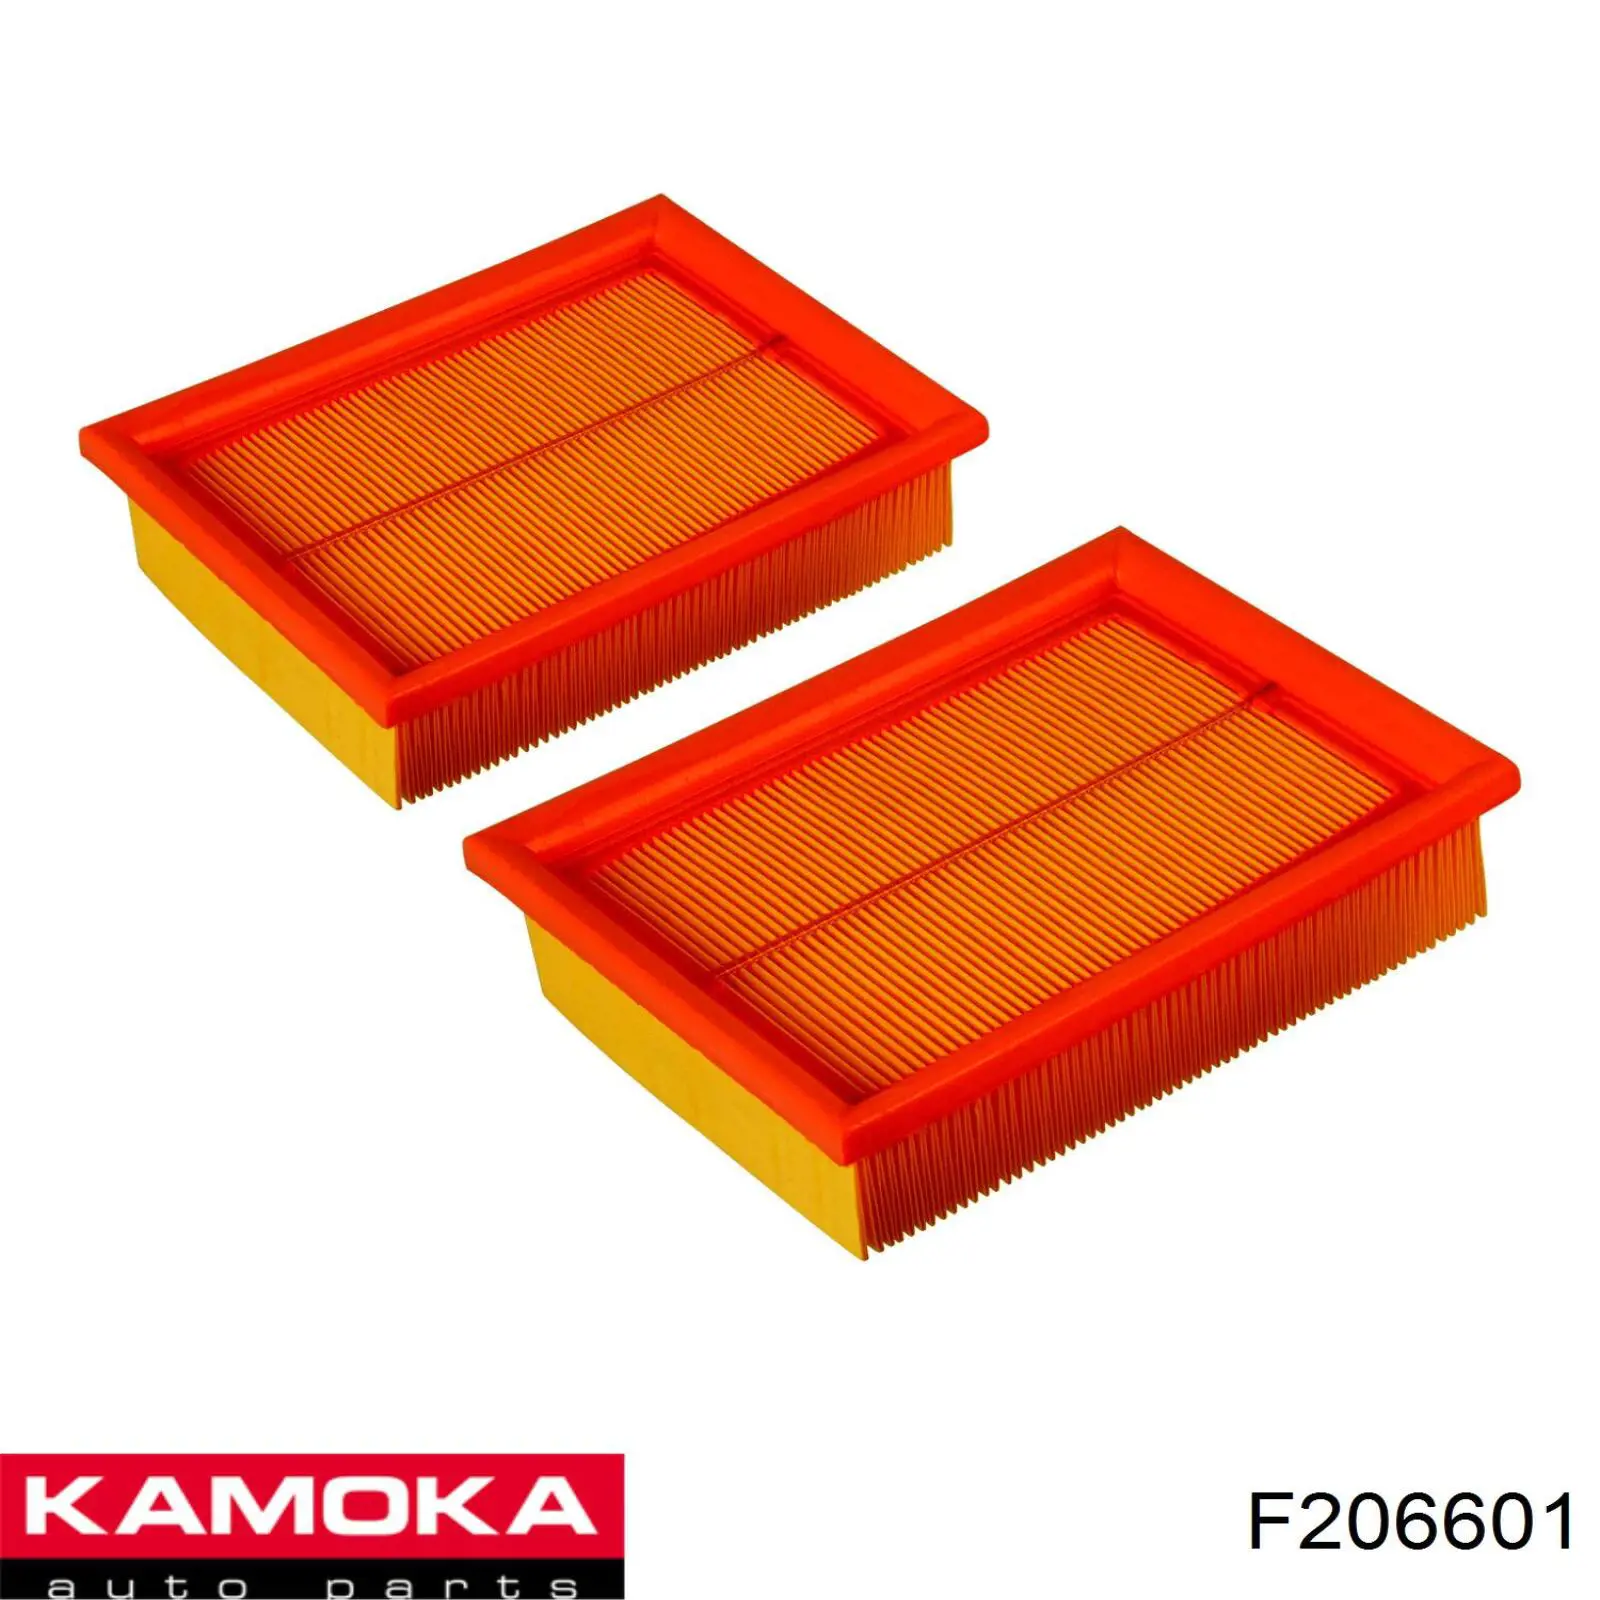 F206601 Kamoka filtro de aire